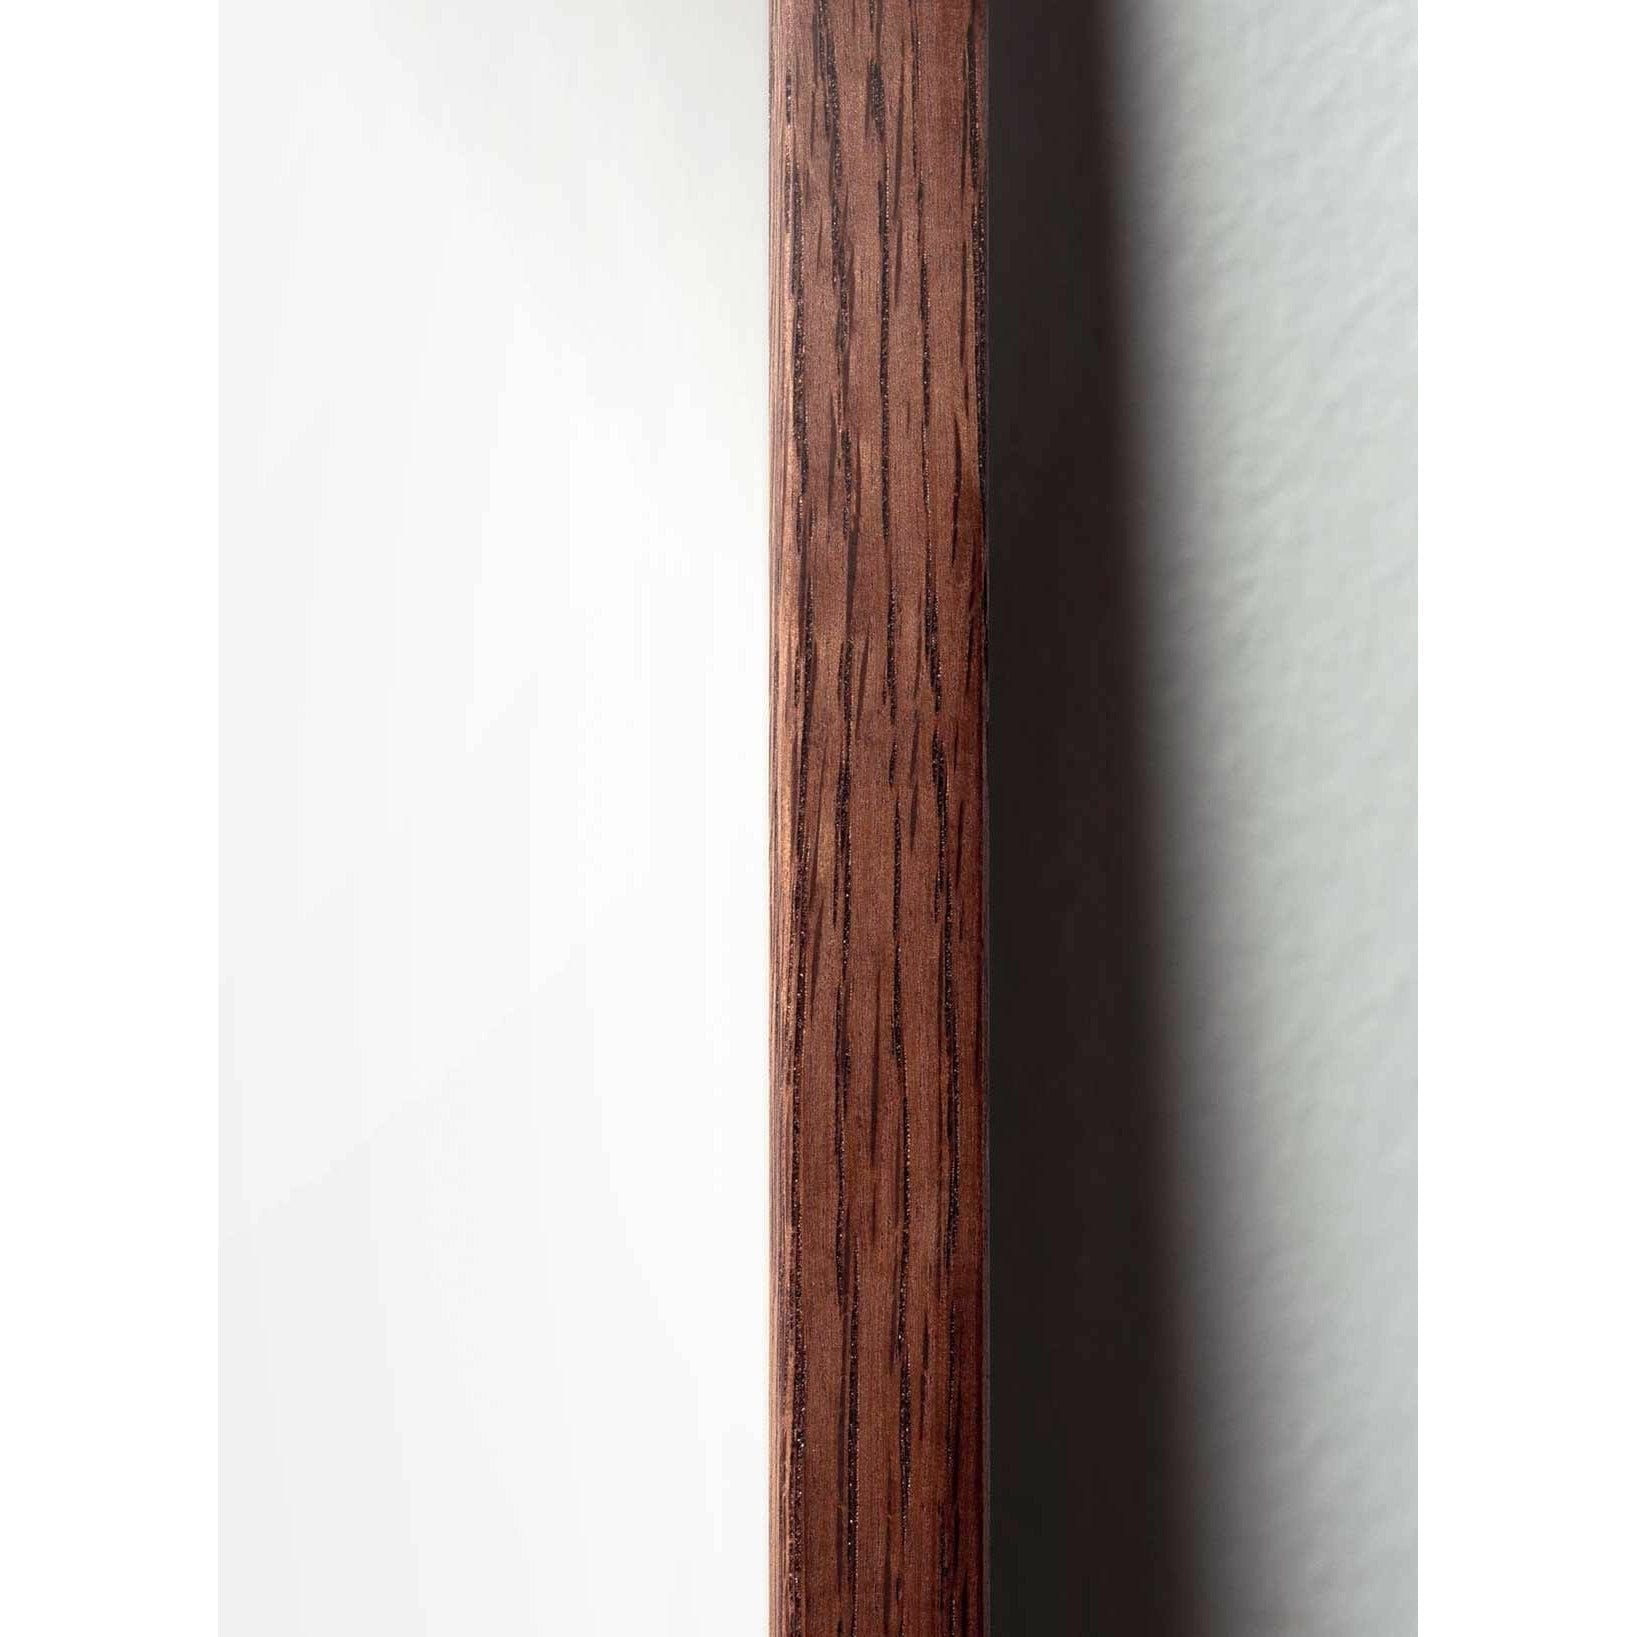 Poster classico di cono di pino da un'idea, cornice in legno scuro A5, sfondo colorato di sabbia